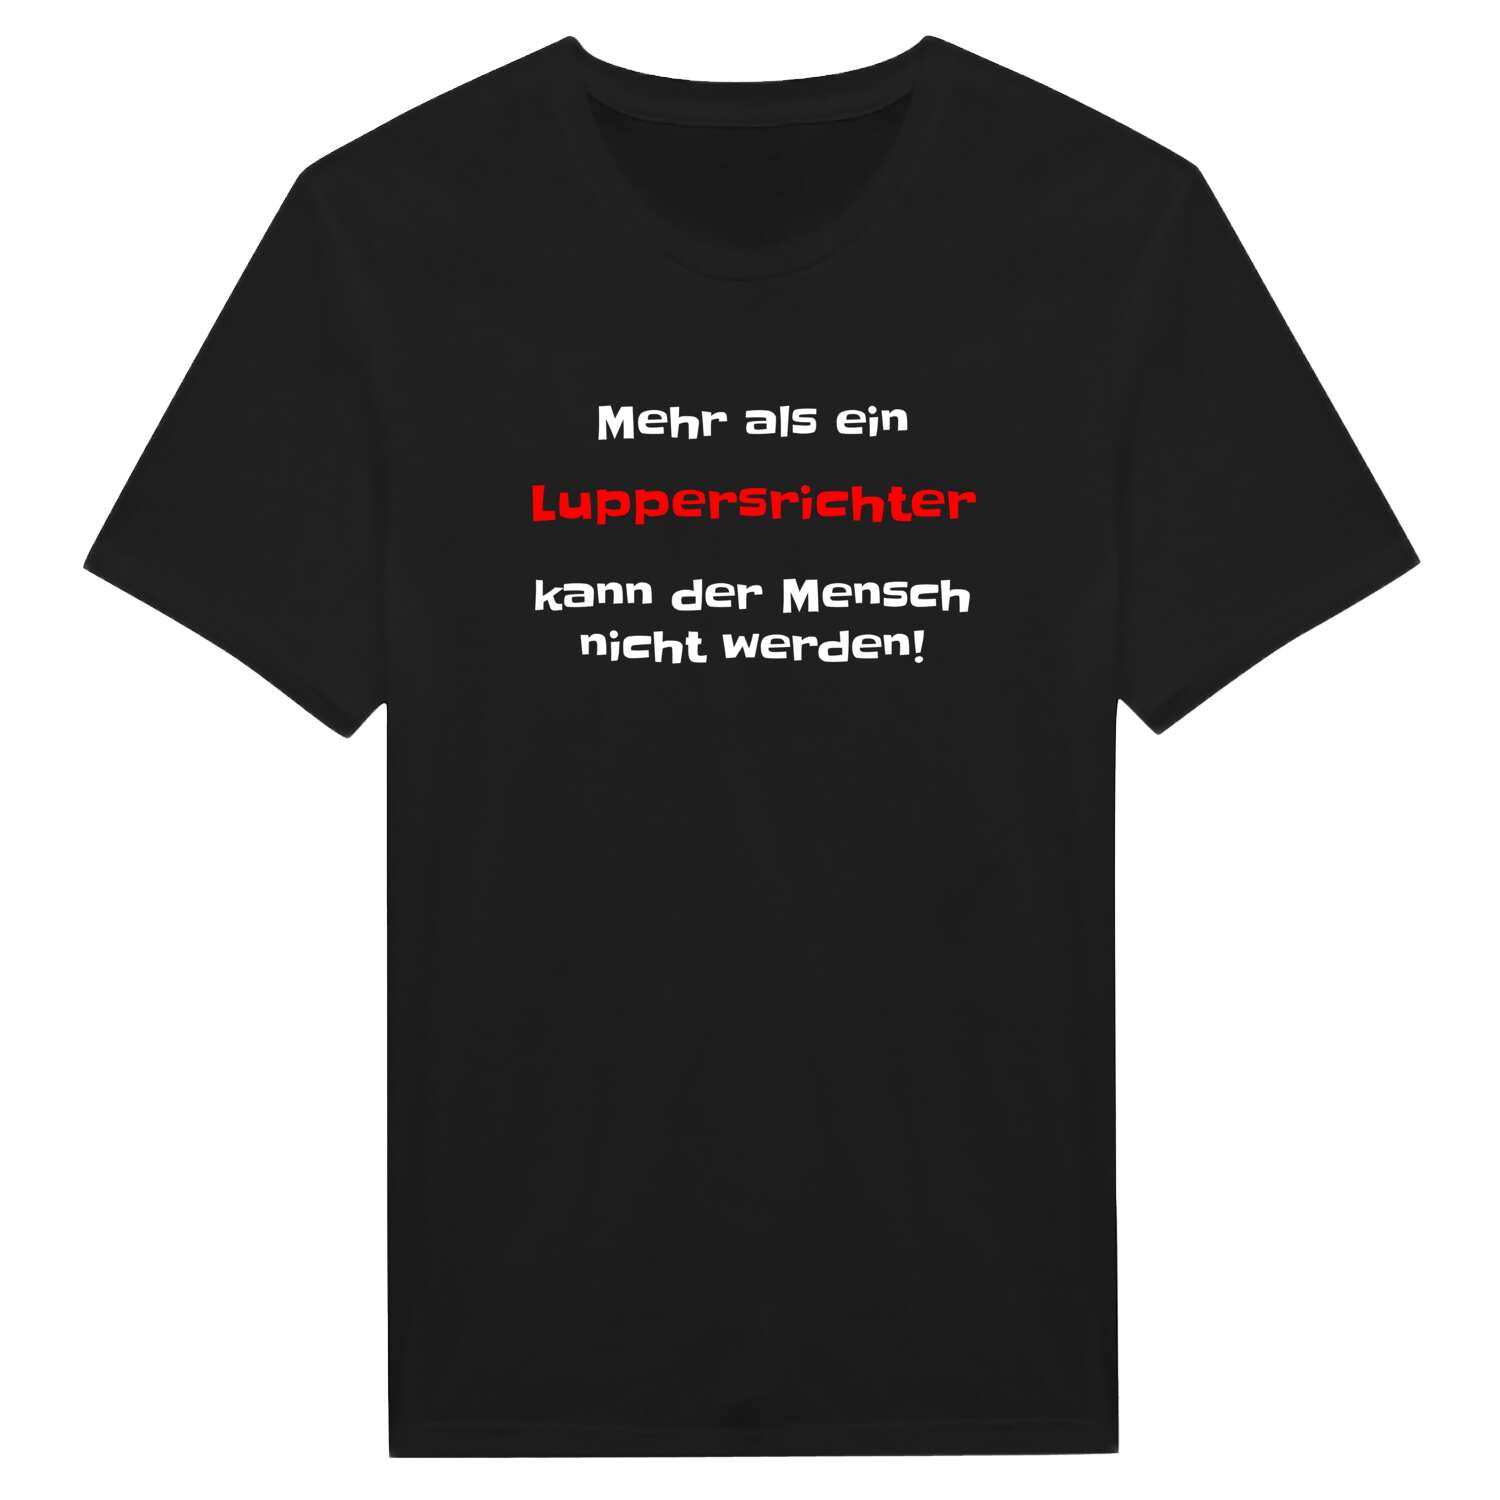 Luppersricht T-Shirt »Mehr als ein«